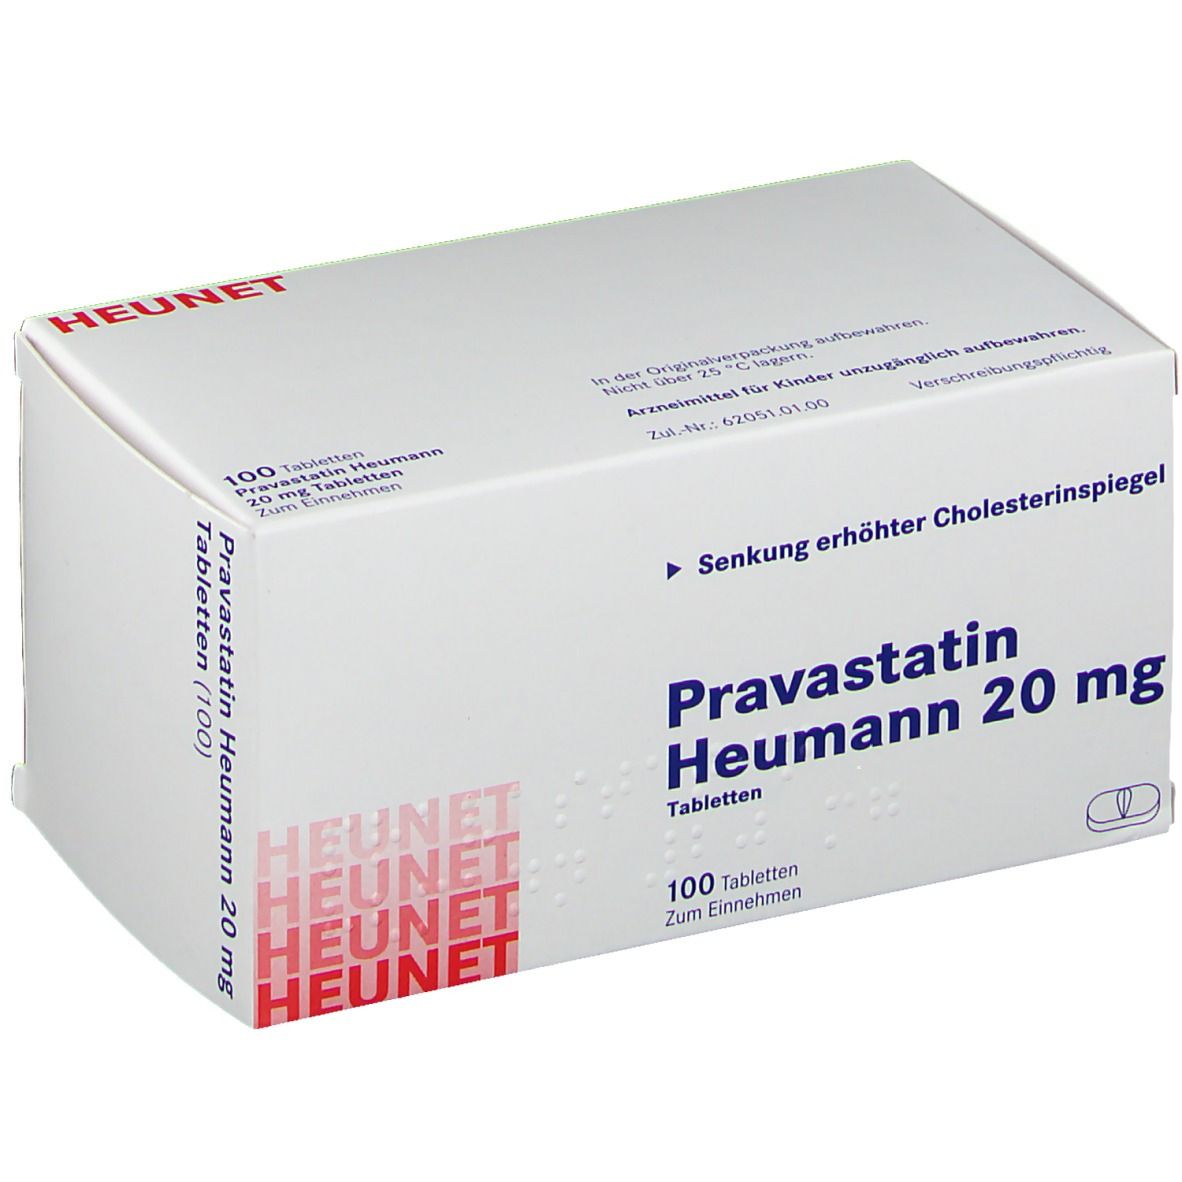 Pravastatin Heumann 20 mg